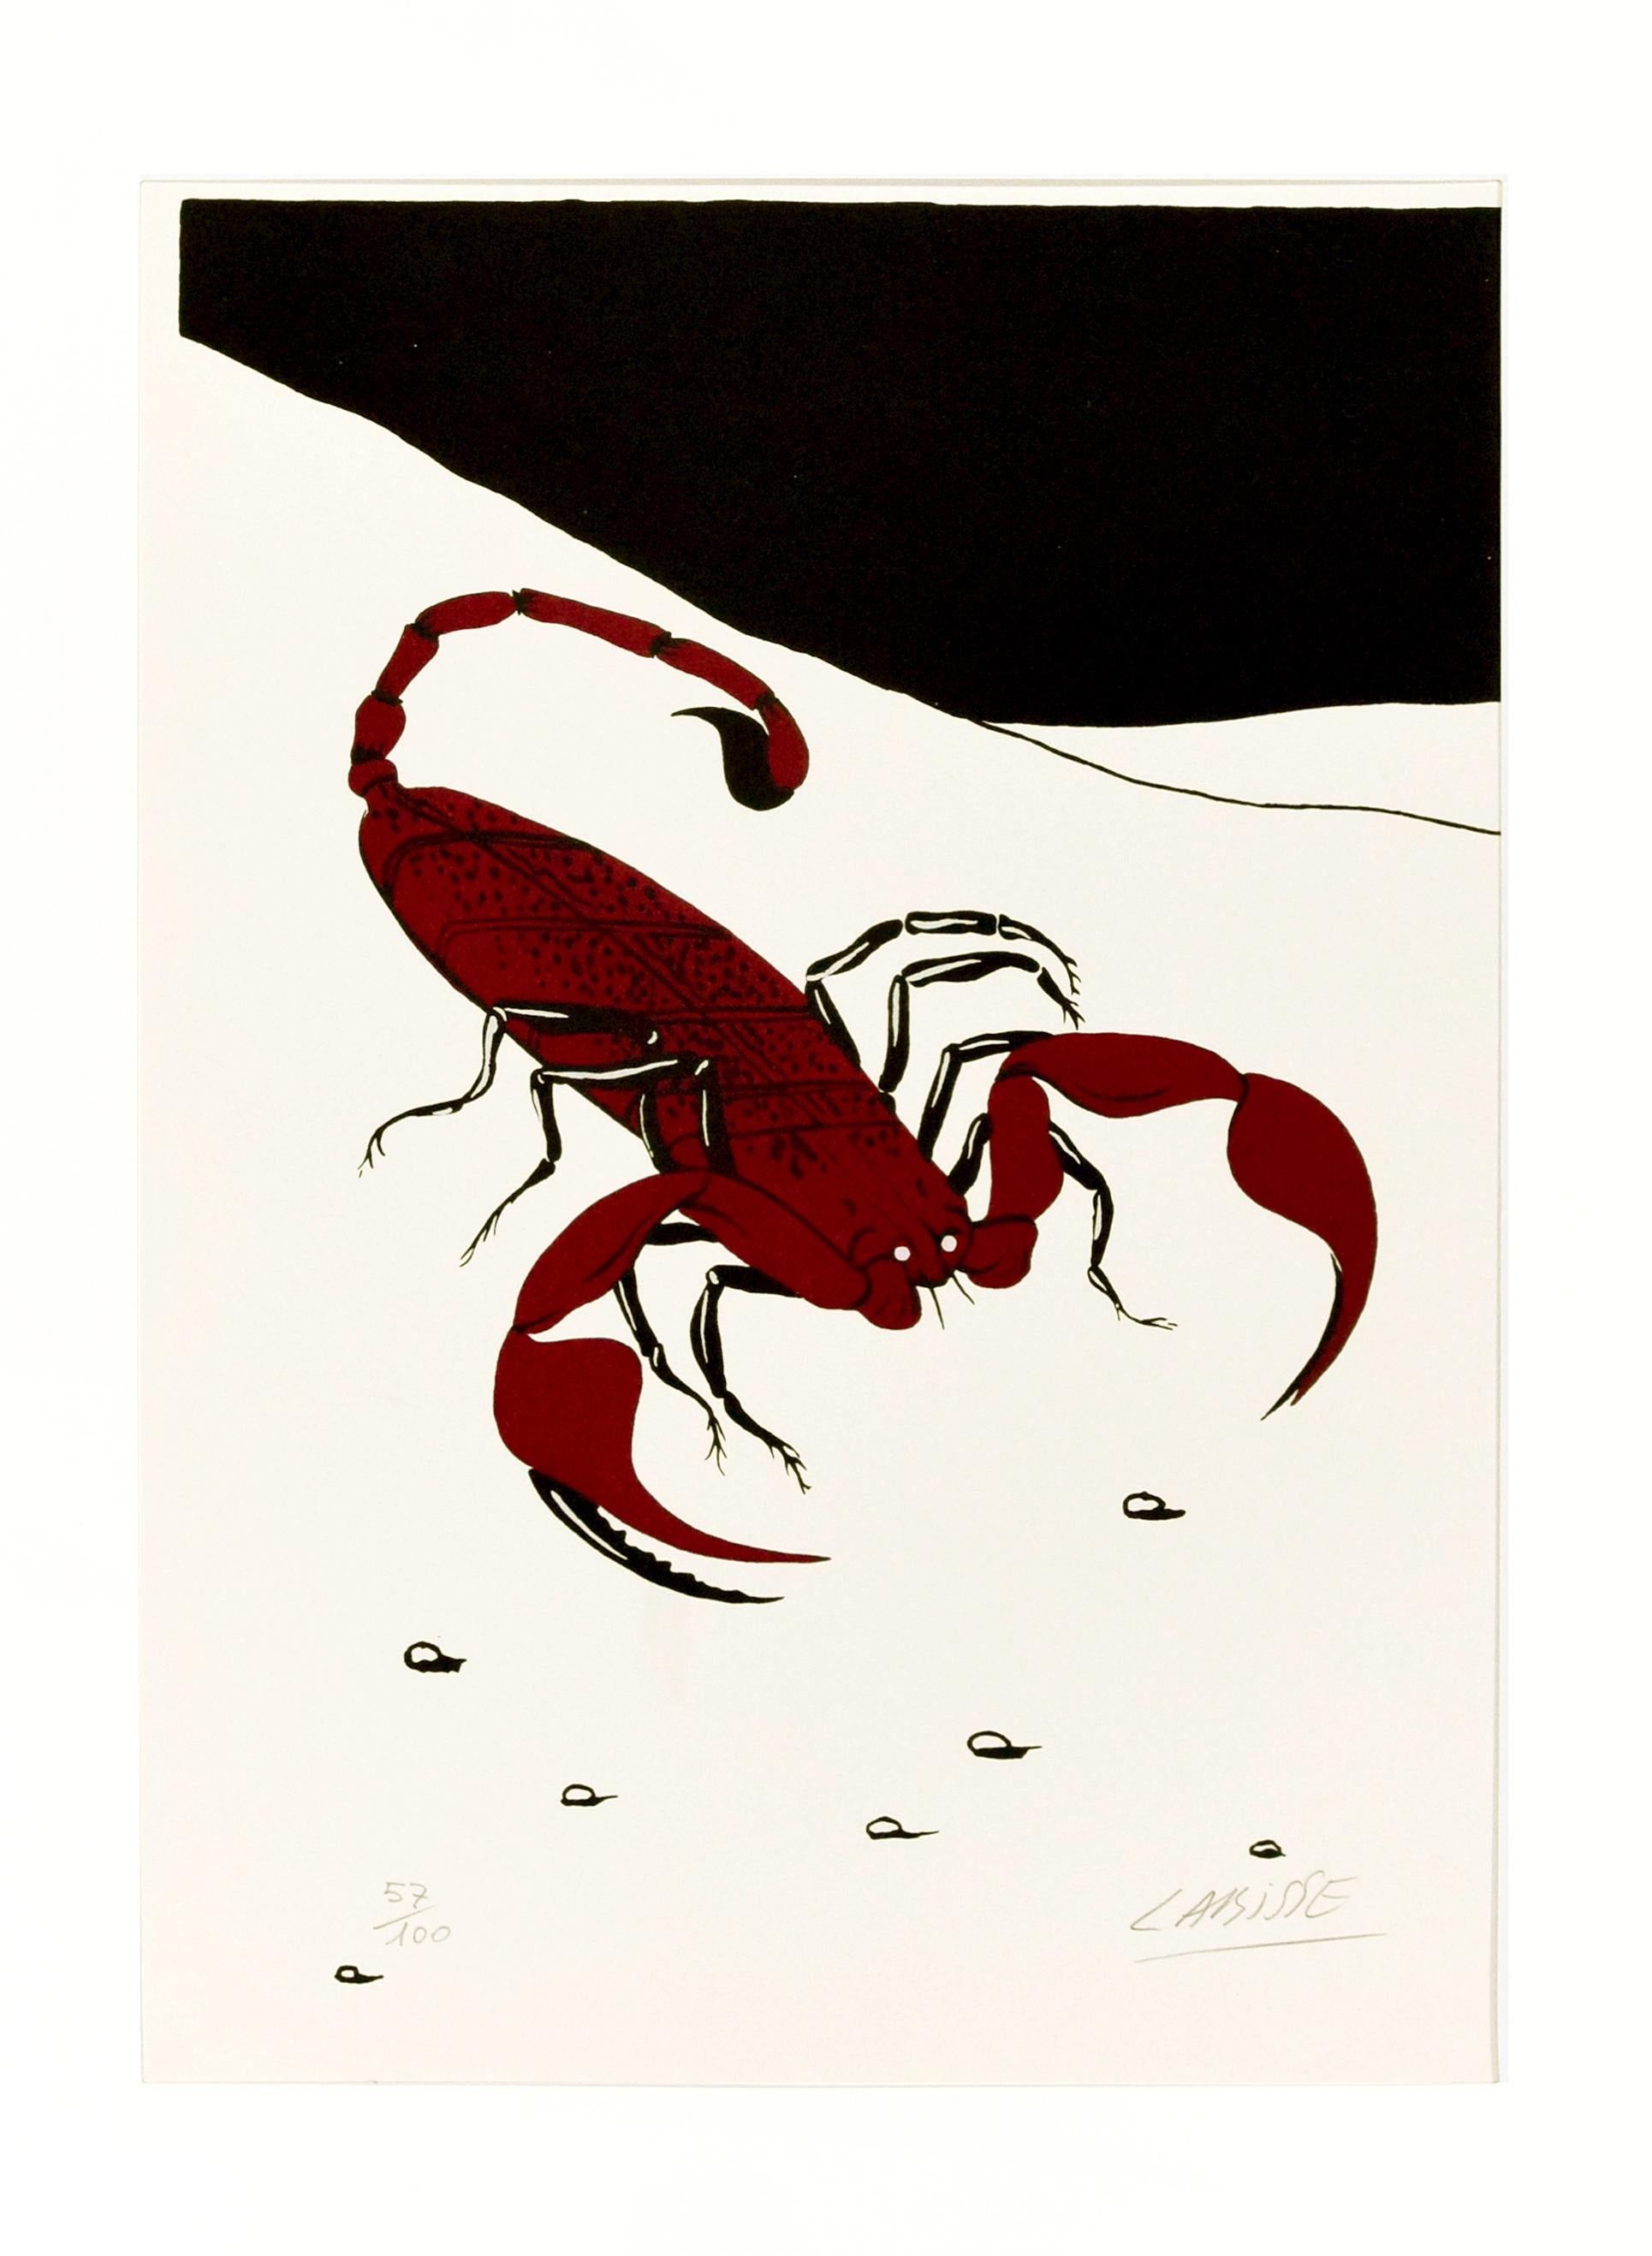 Felix Labisse Abstract Print - Scorpion - Original Screen Print y Félix Labisse - 1970s